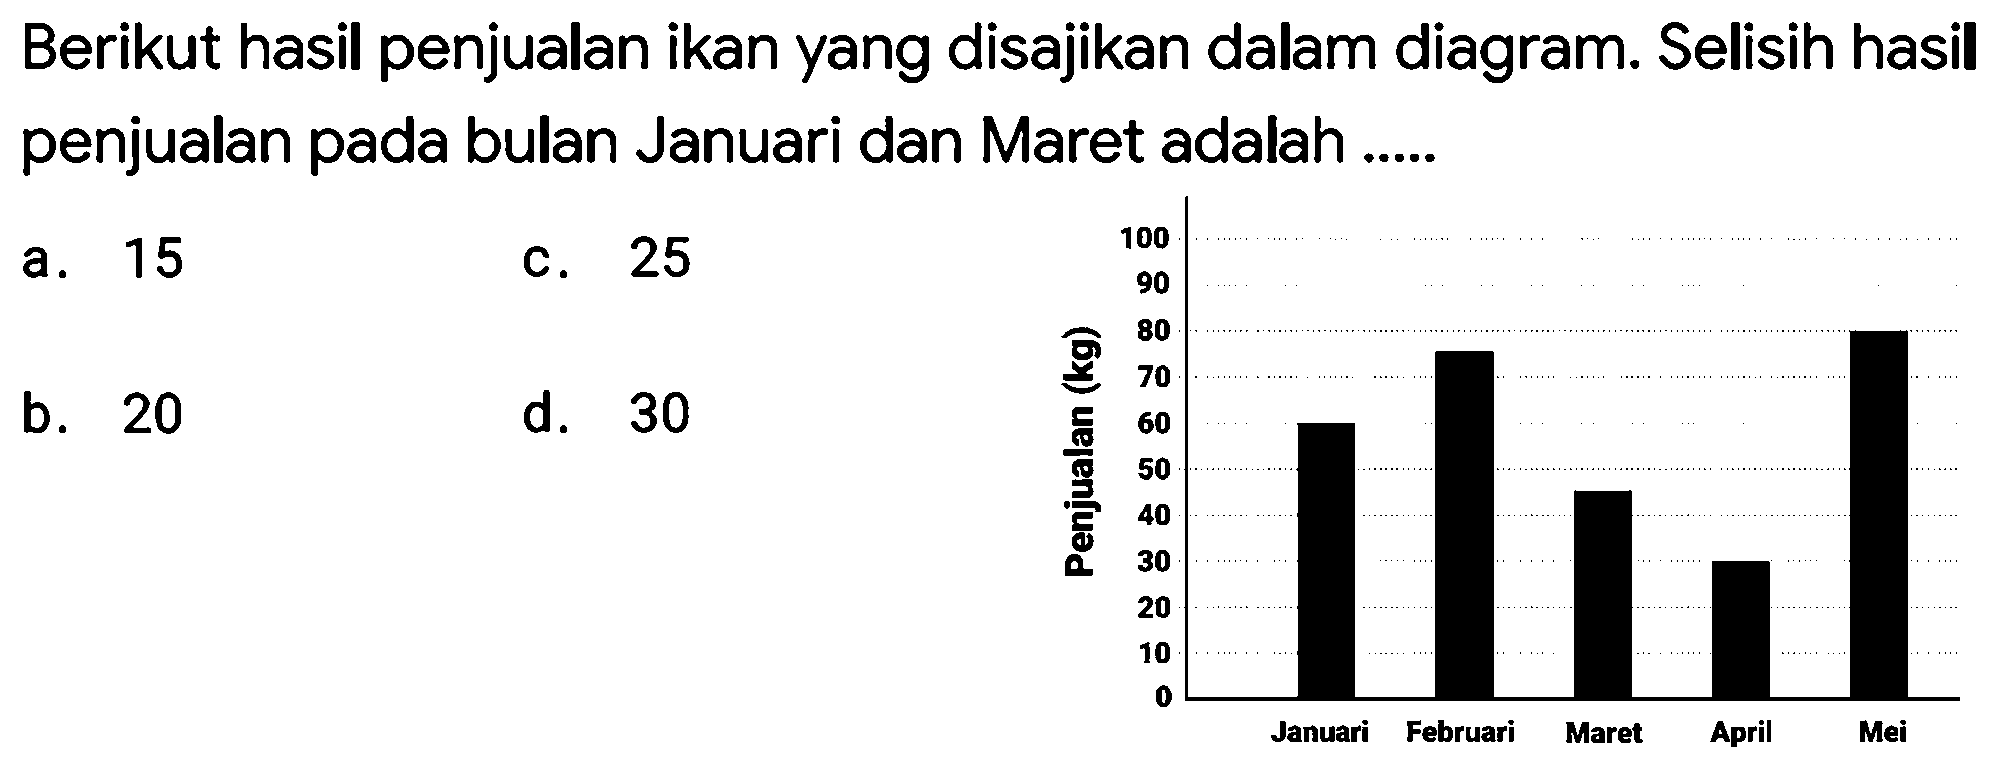 Berikut hasil penjualan ikan yang disajikan dalam diagram. Selisih hasil penjualan pada bulan Januari dan Maret adalah .....
a. 15
c. 25
b. 20
d. 30